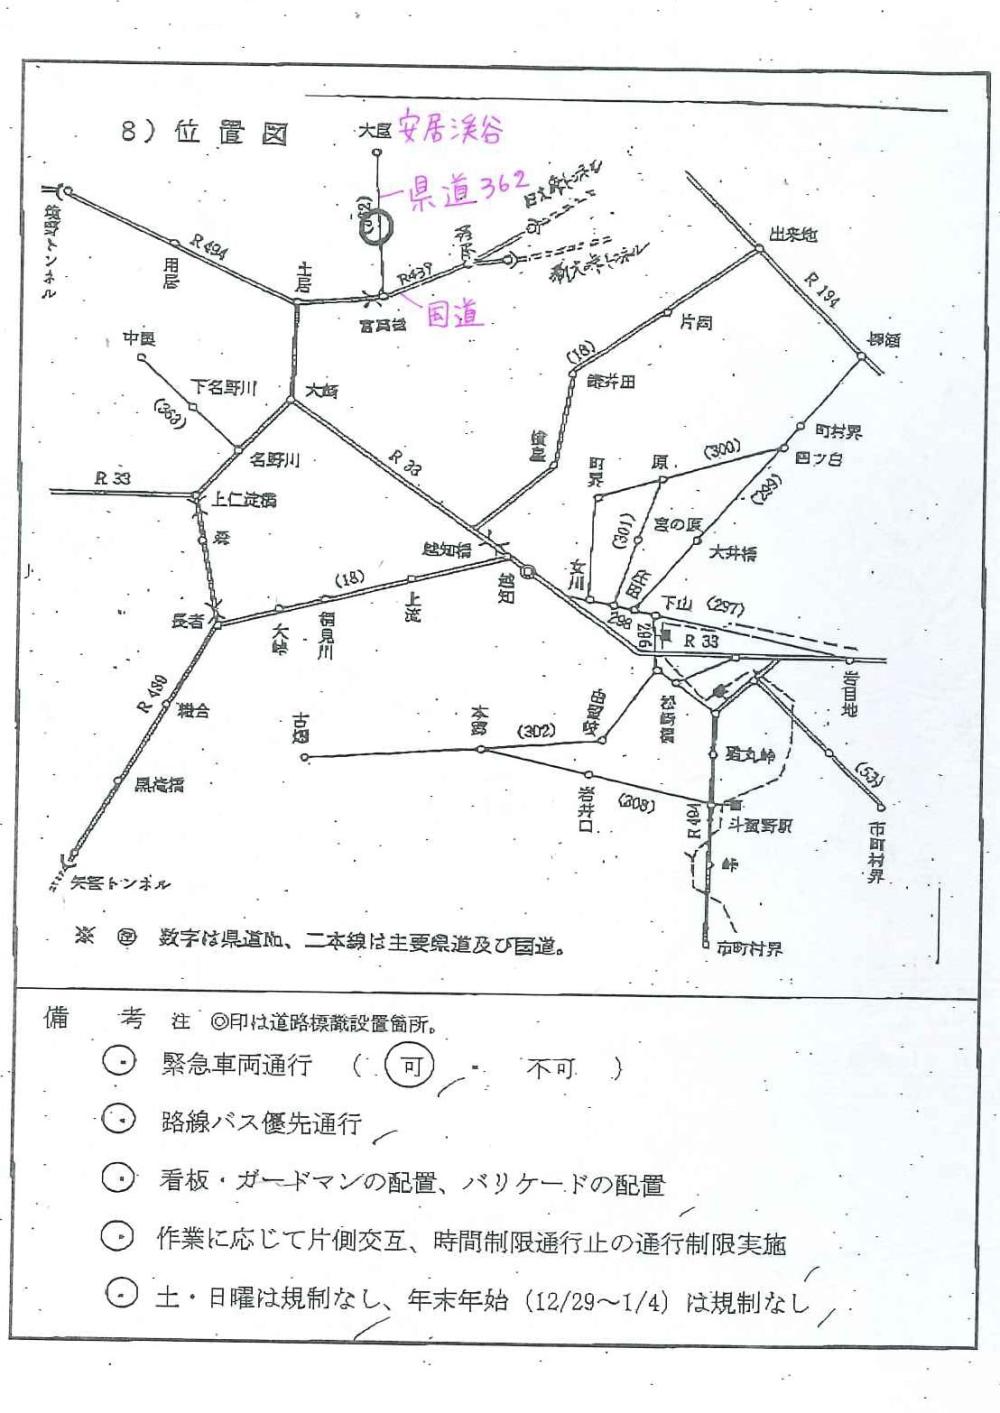 県道362号・安居公園線にて時間通行制限のお知らせ（R4.12/1～R4.1/18）